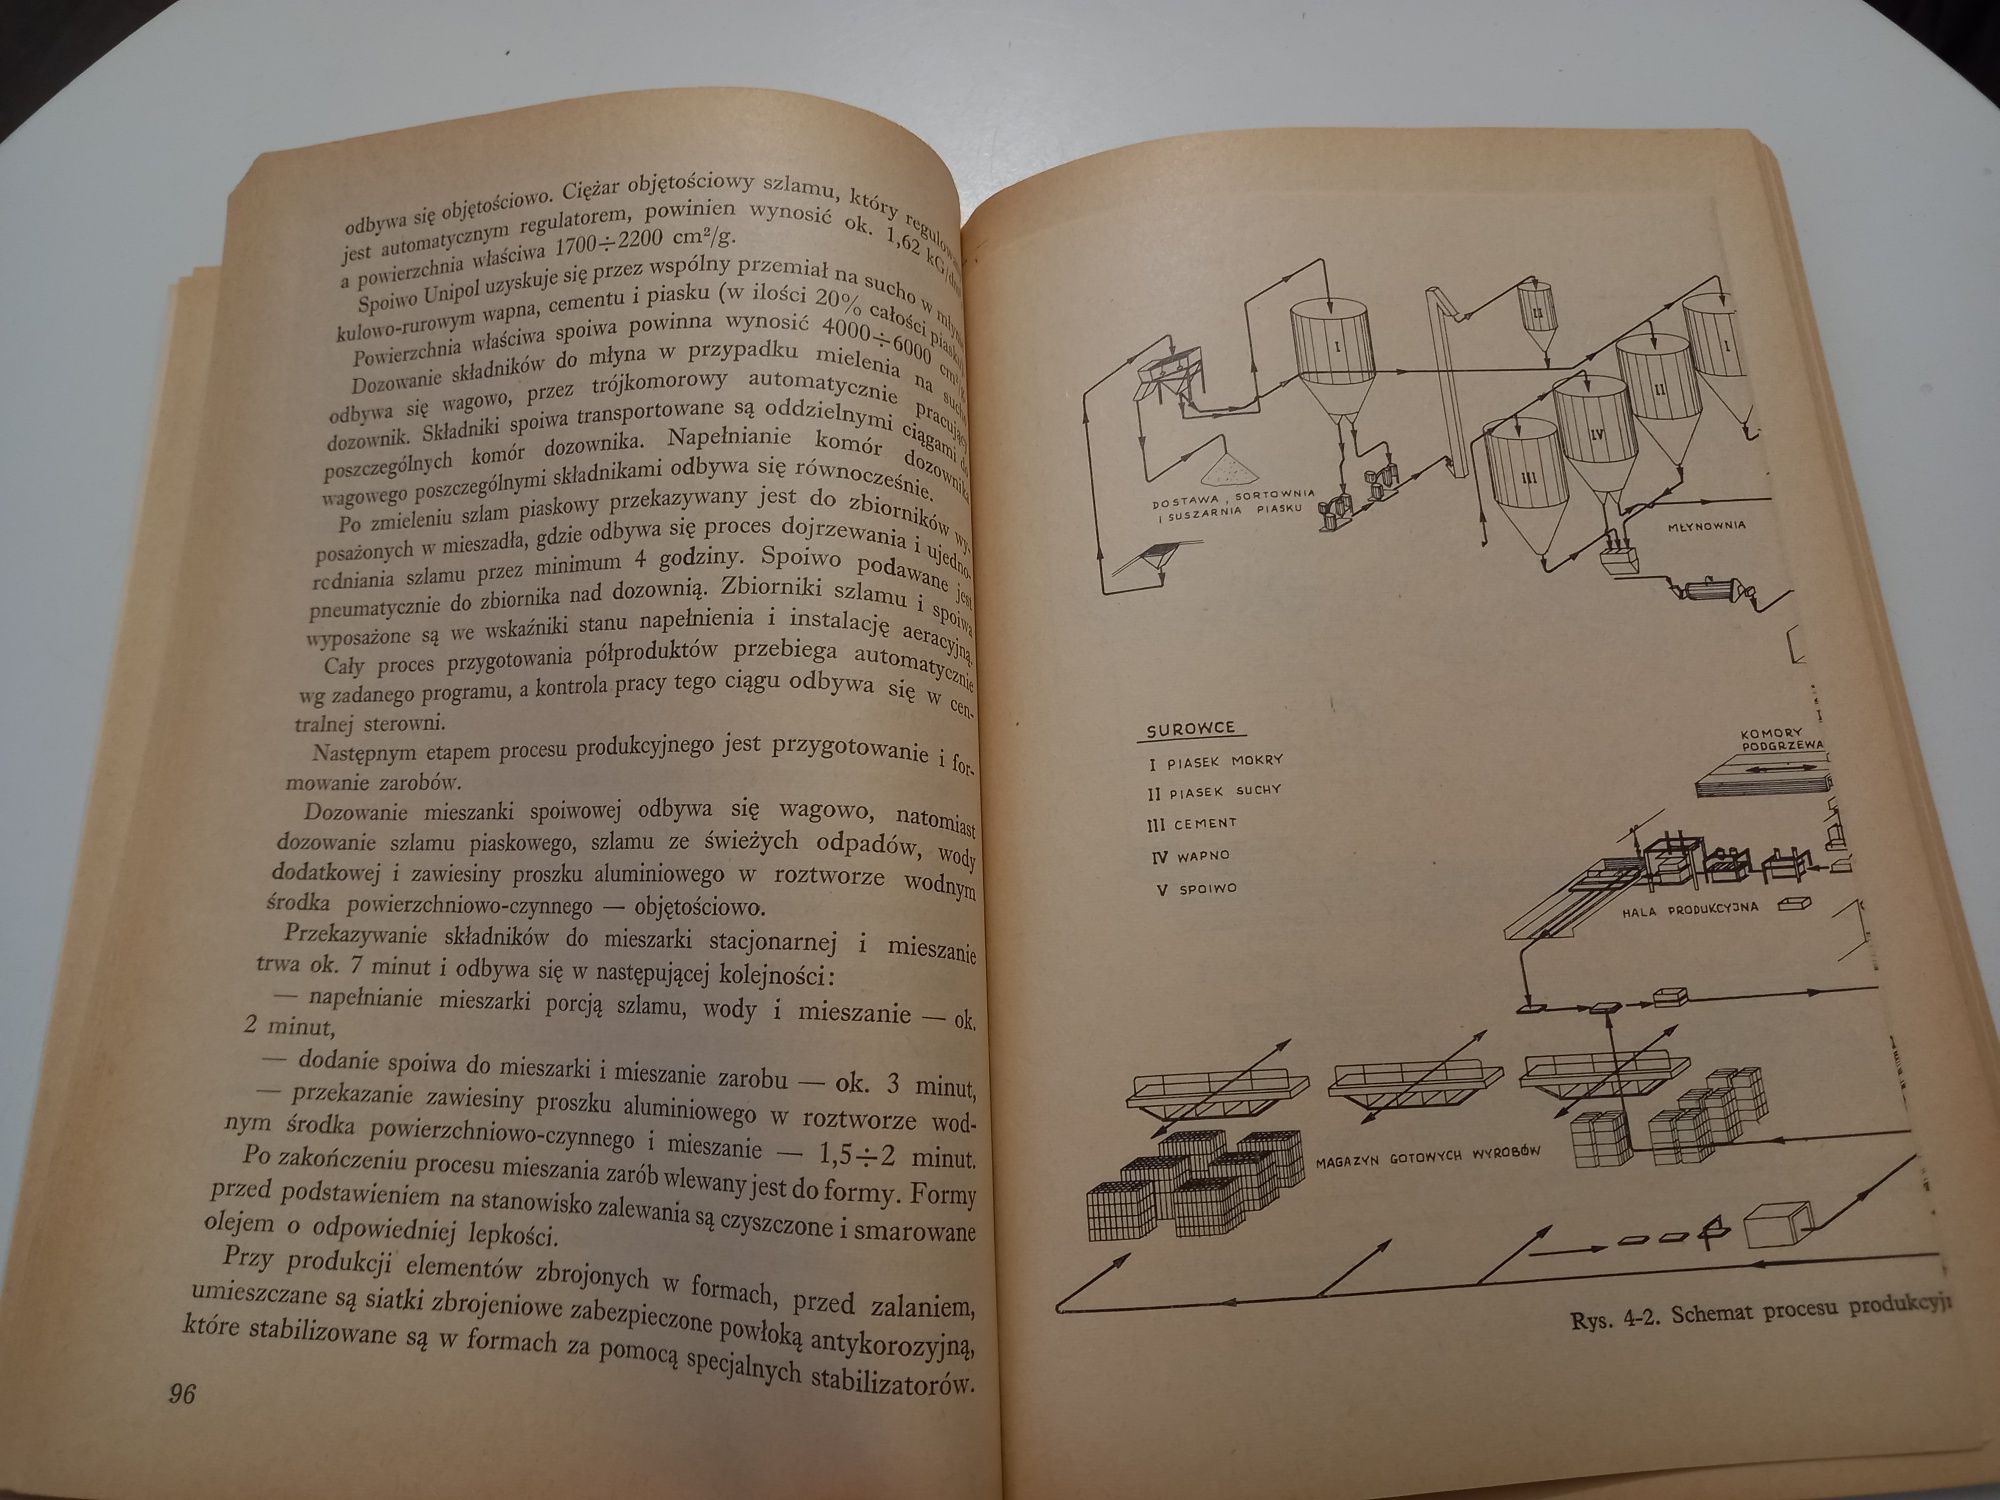 Technologia Auto-Klawizowanego Betonu Komórkowego praca zbiorowa 1975